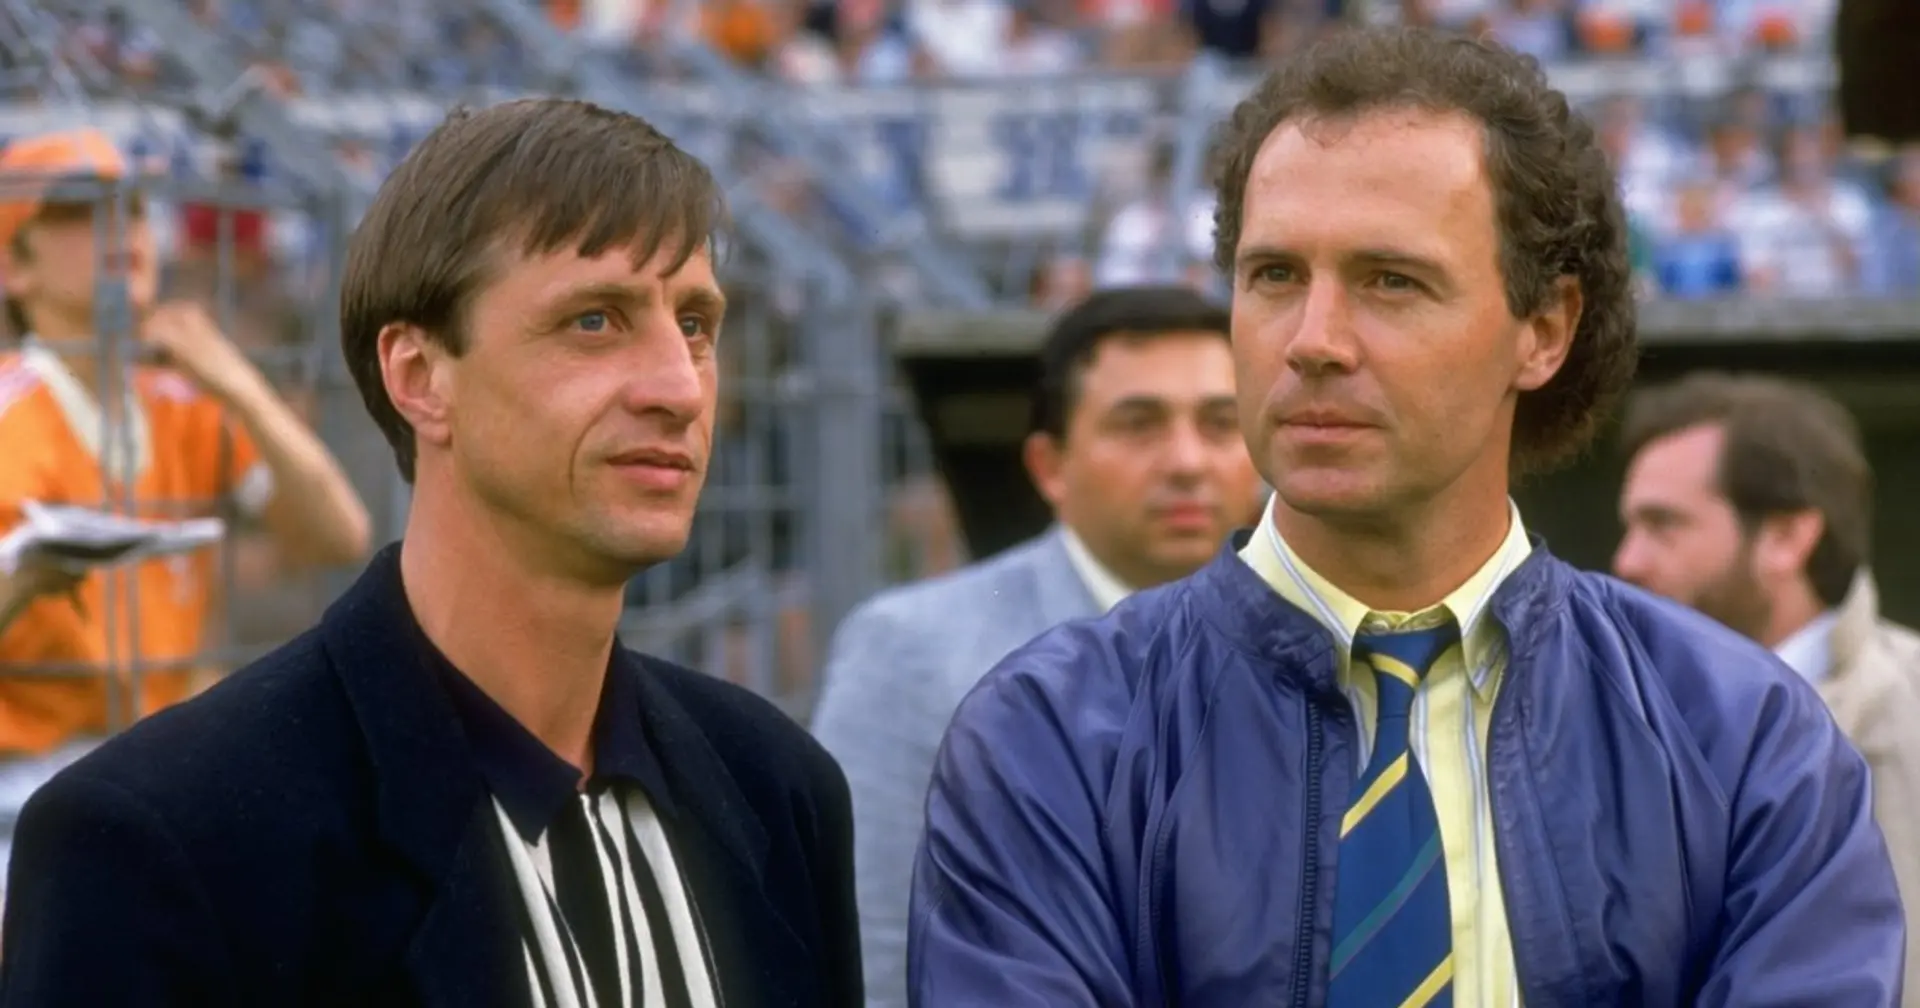 Mannschaftskollegen für zwei Monate, Respekt und Skifahren in Österreich: So wurden Franz Beckenbauer und Johan Cruyff enge Freunde